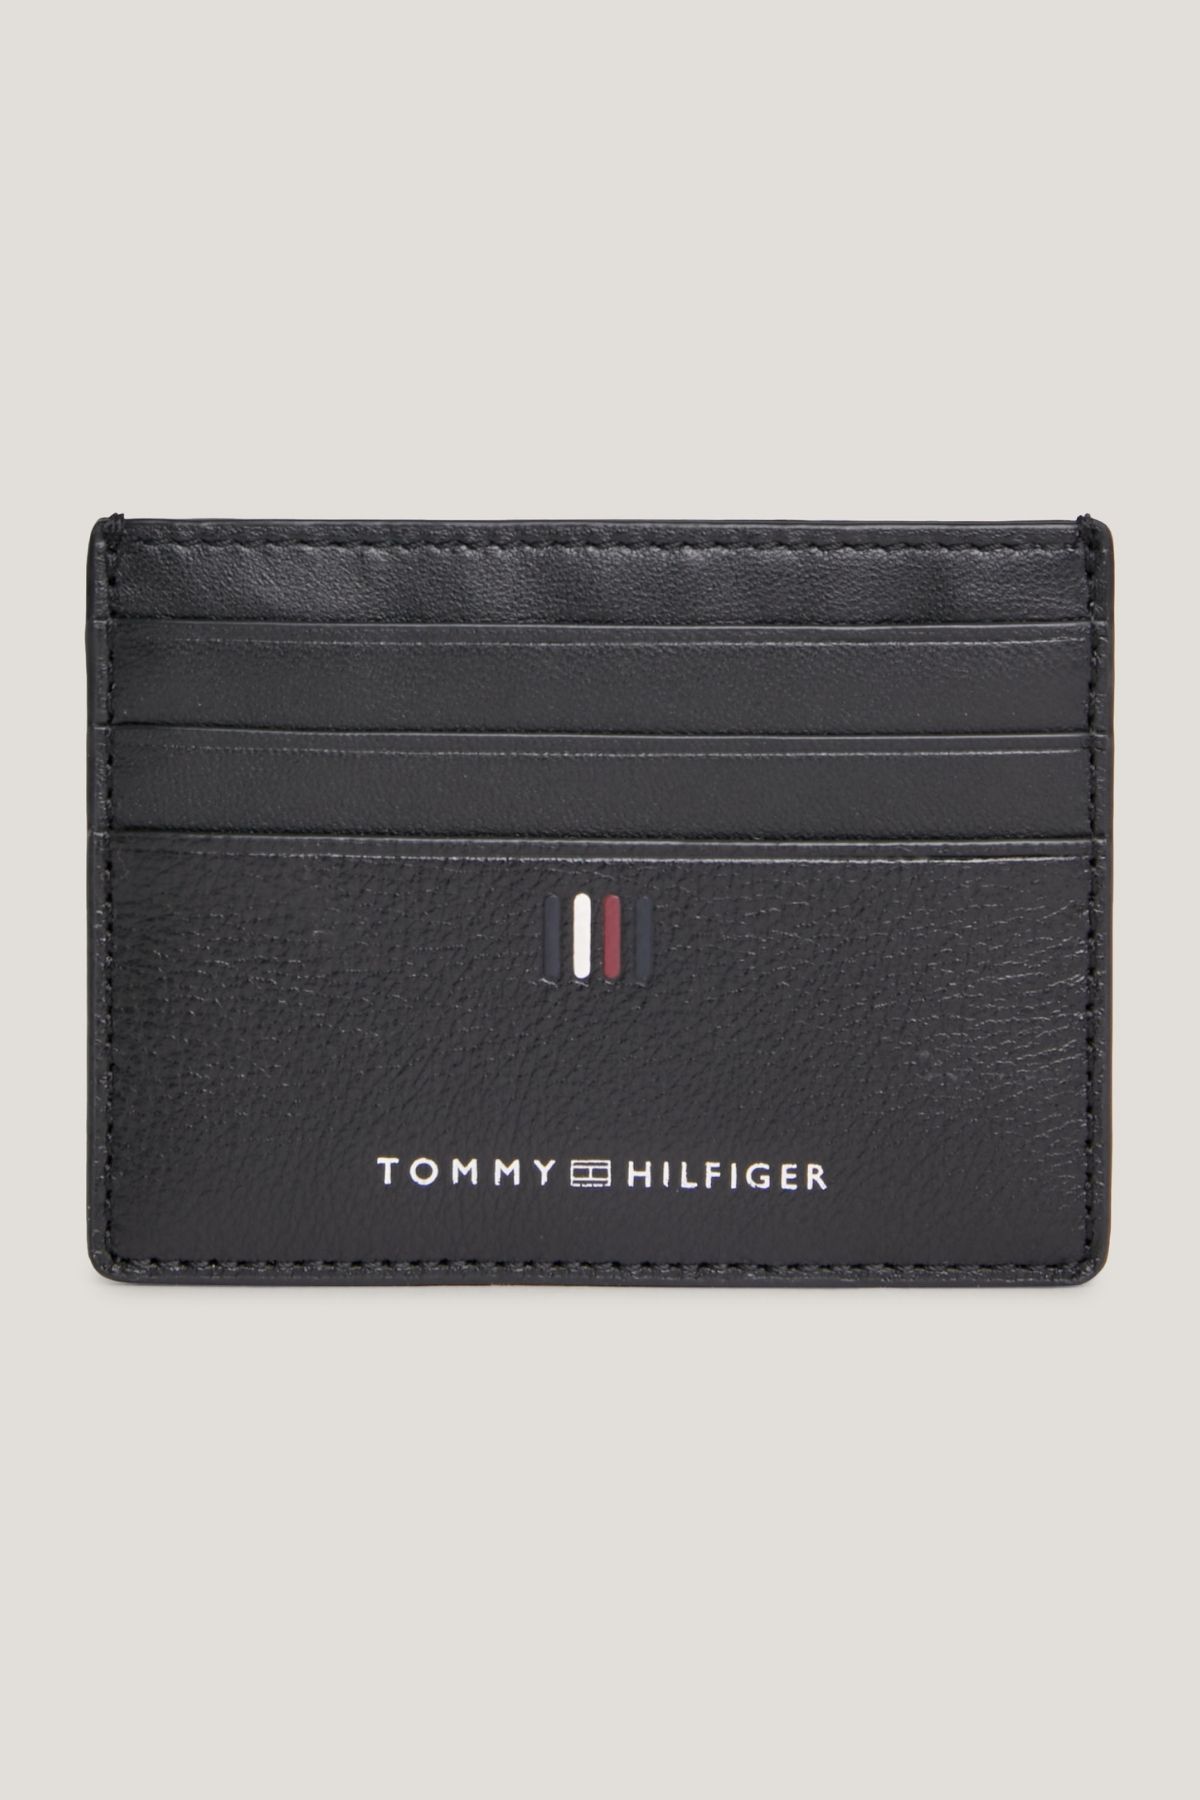 Tommy Hilfiger Erkek Marka Logolu Pürüzsüz Yüzeyli Birden Fazla Kart Yuvalı Siyah Cüzdan Am0am11858-Bds